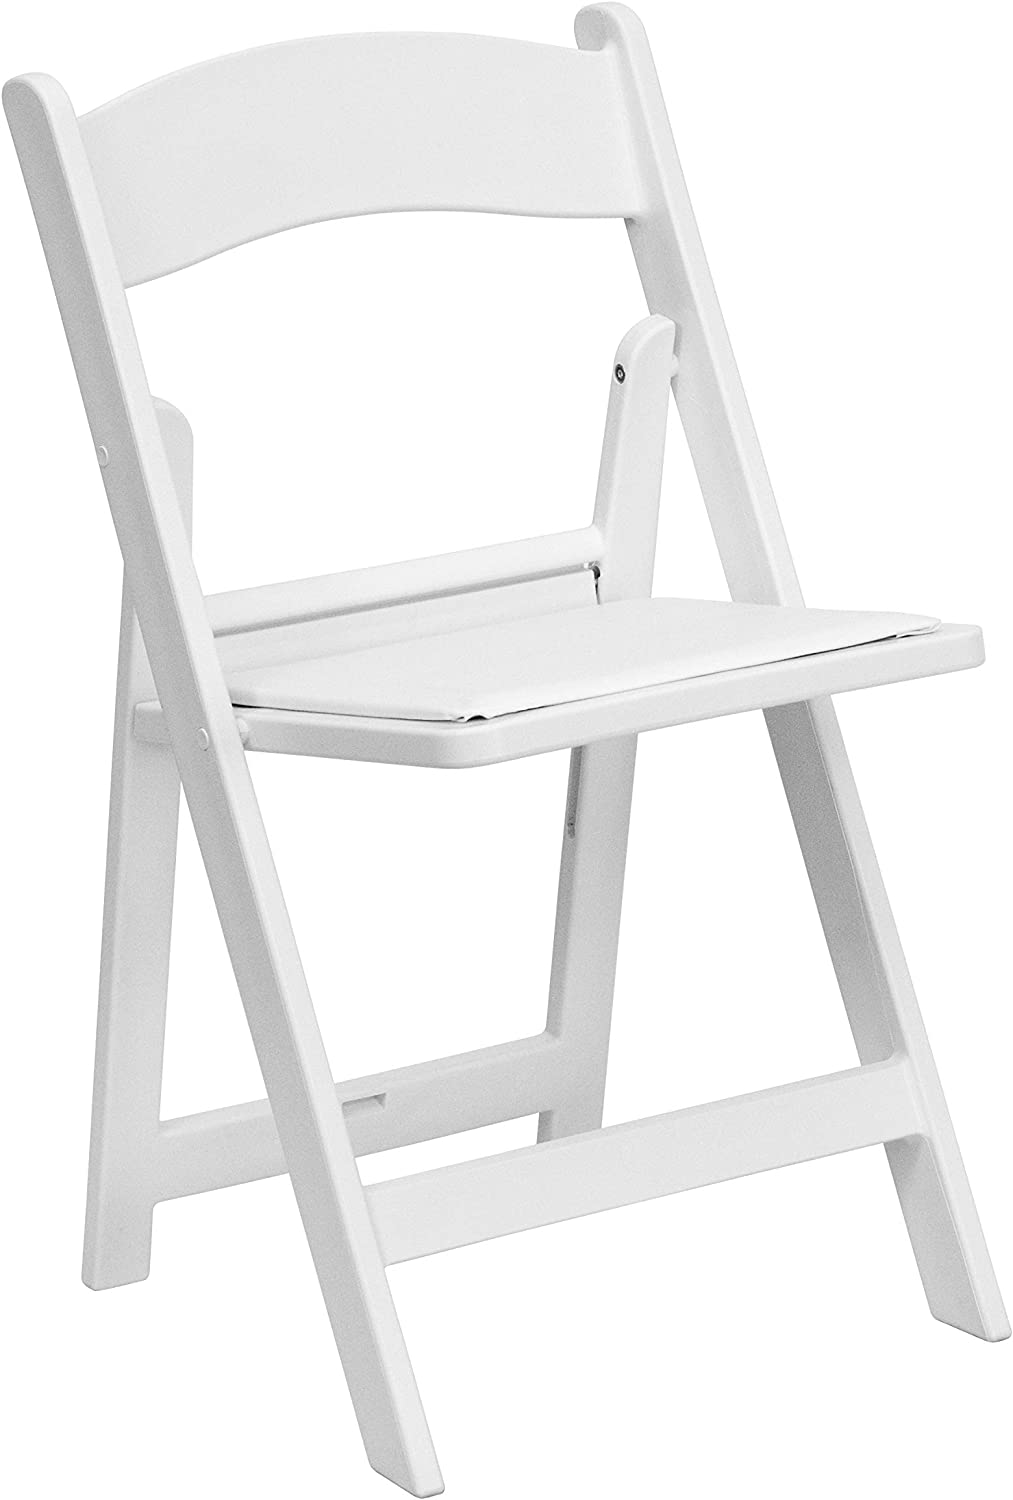 Flash Furniture Hercules√É¬¢√¢‚Ç¨≈æ√Ç¬¢ Series Folding Chair - White Resin - 1000LB Weight Capacity Comfortable Event Chair - Light Weight Folding Chair